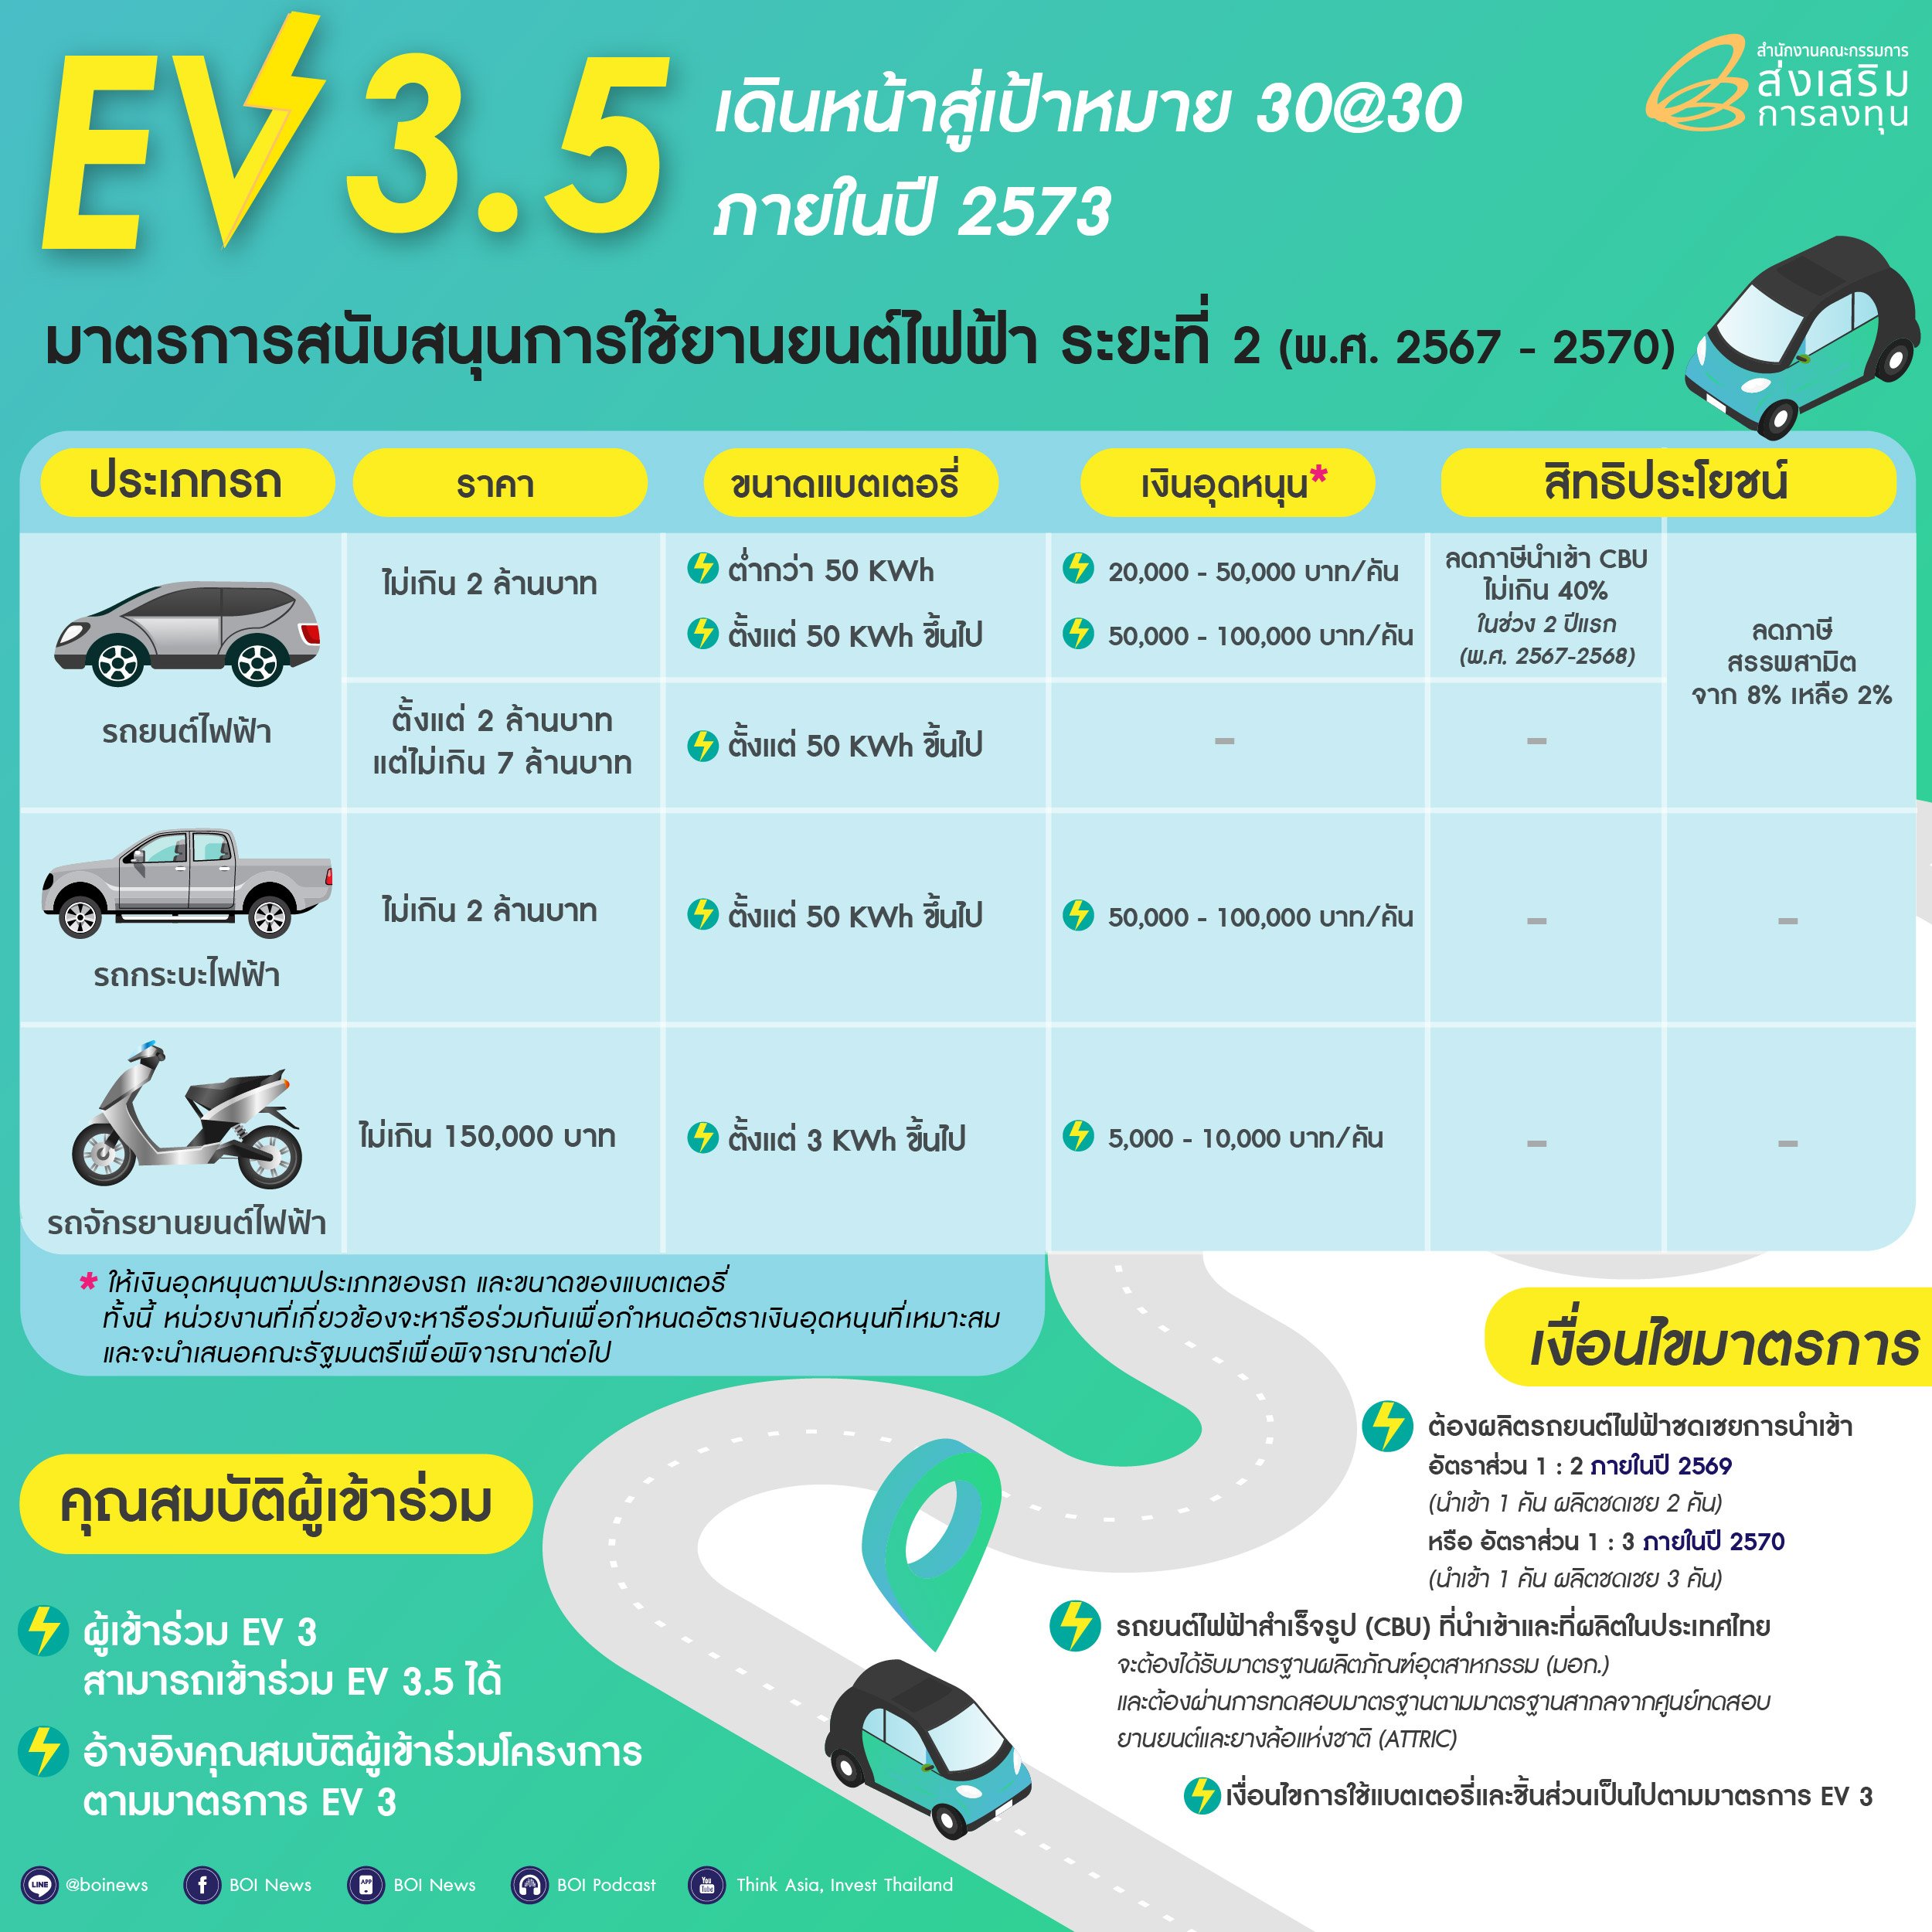 มาตรการ EV 3.5 